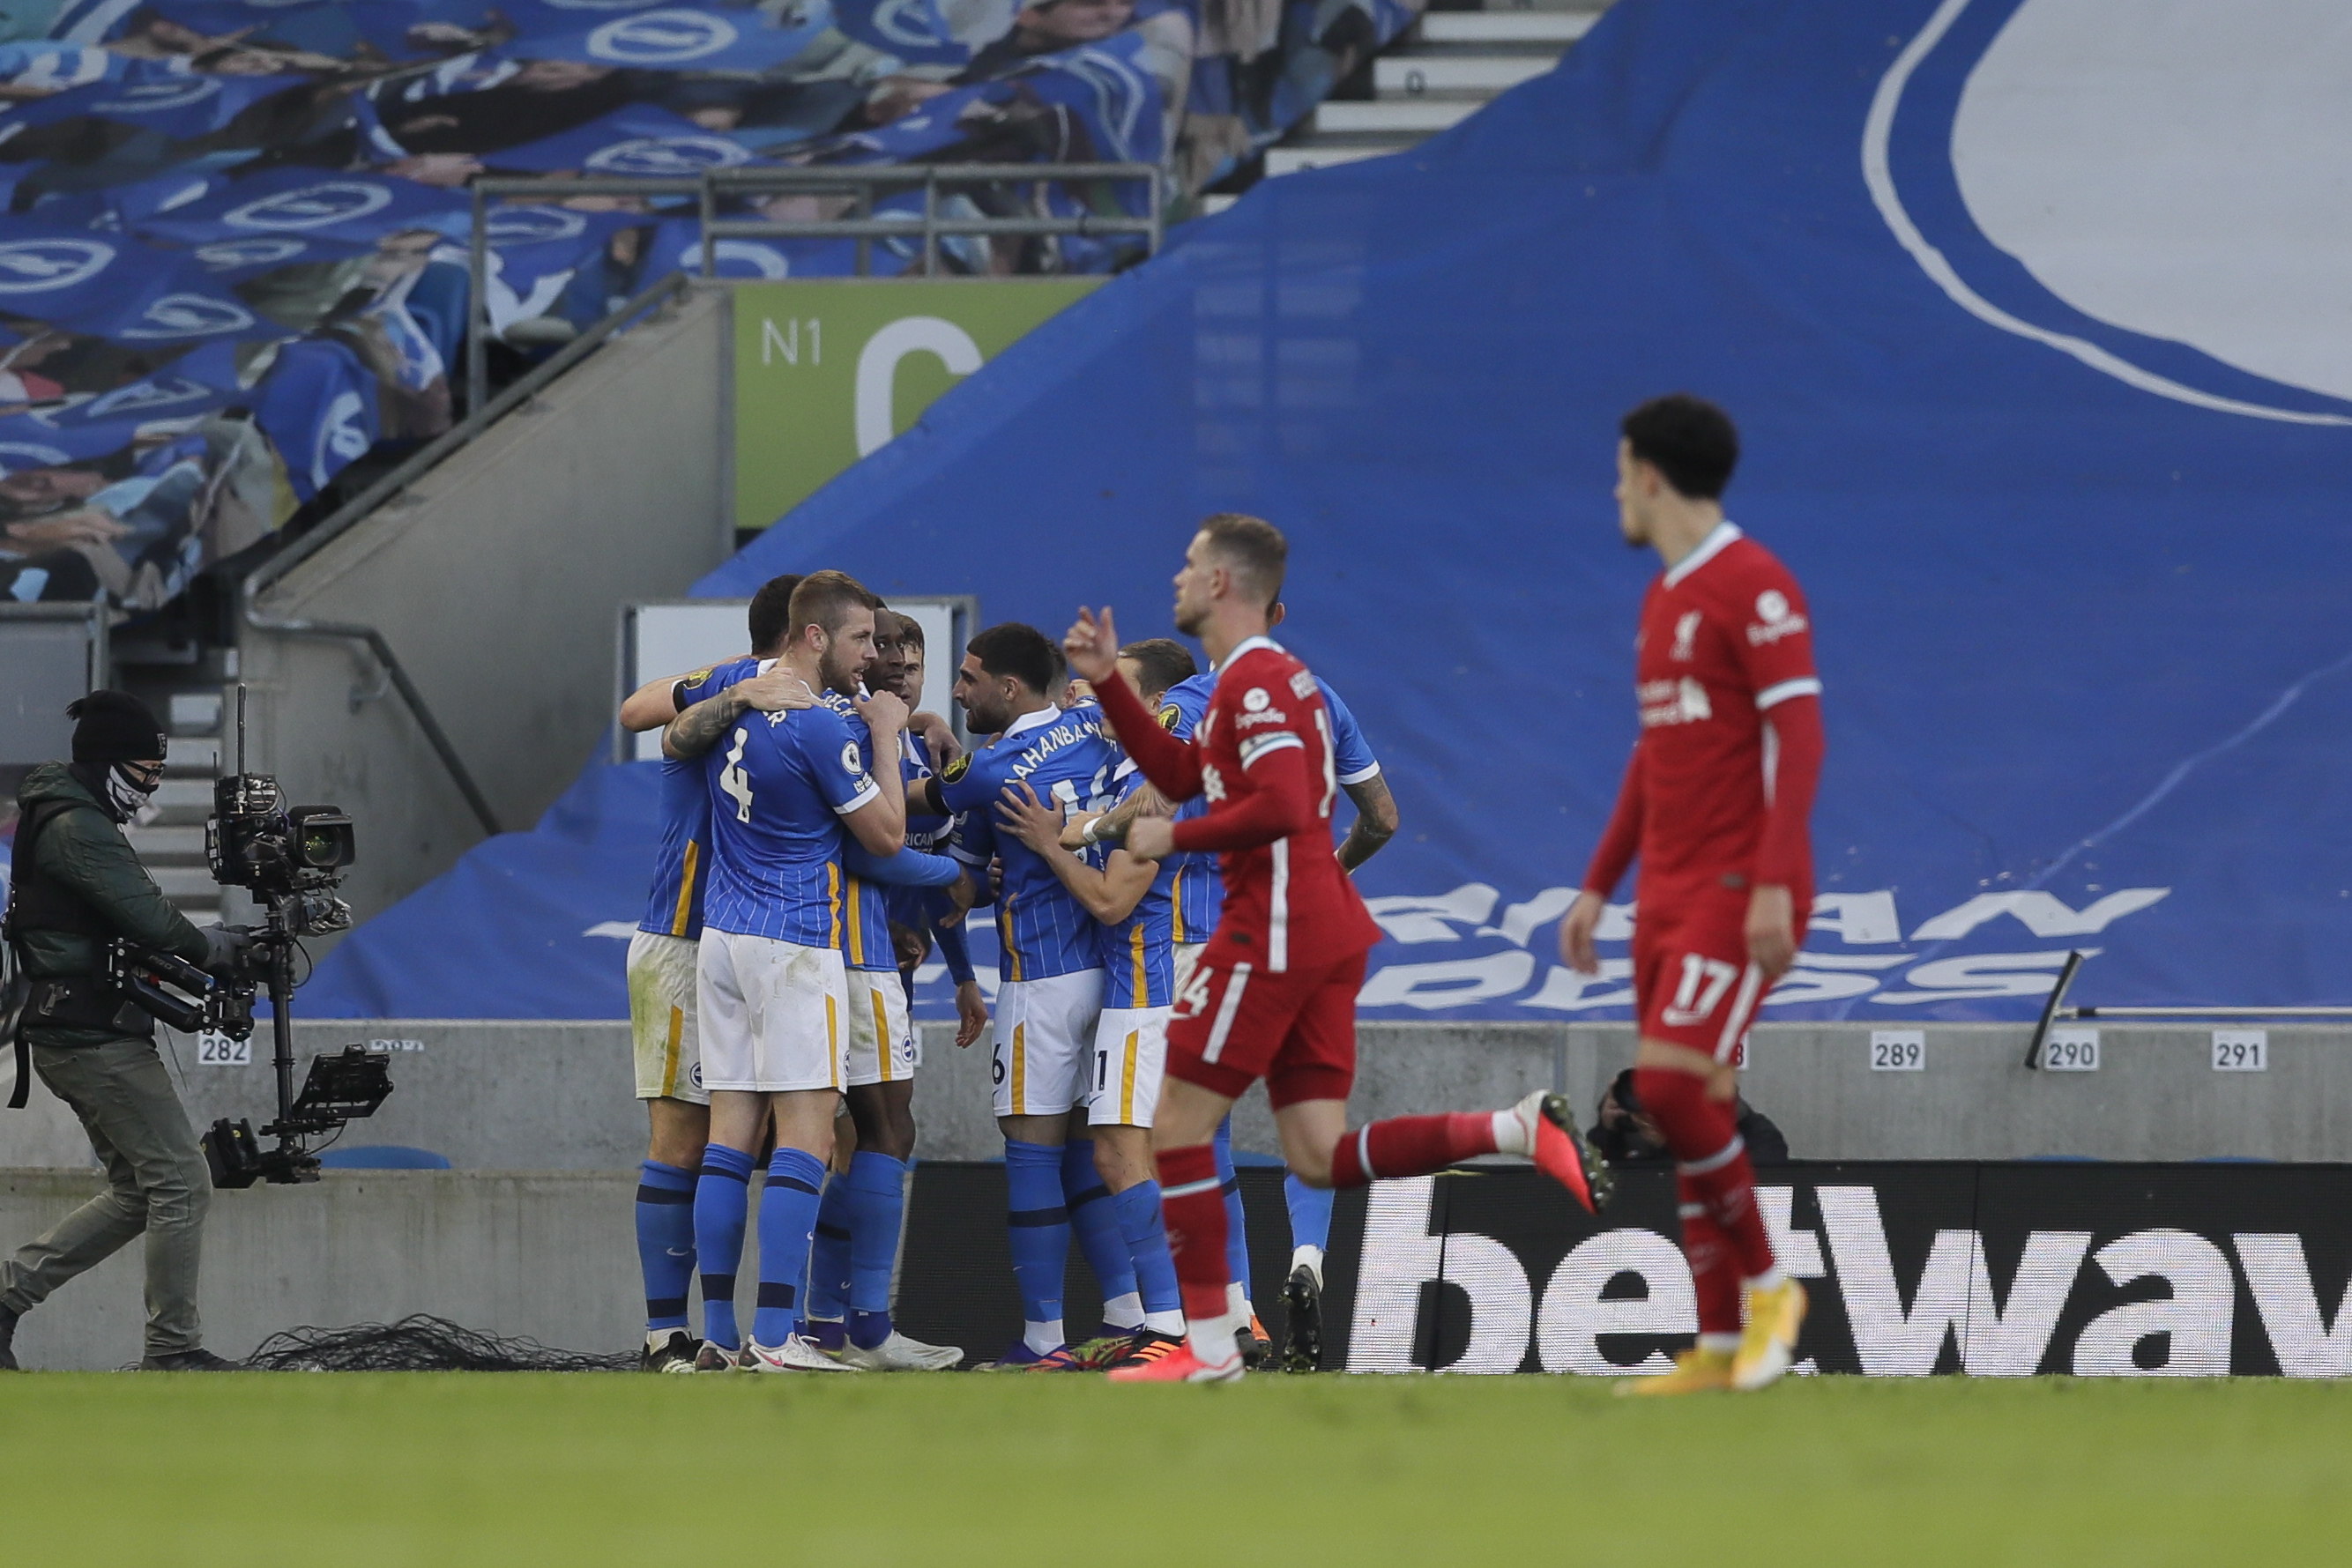 El Liverpool cedió un empate ante el Brighton en un juego marcado por dos goles del Liverpool anulados por el VAR. (Foto Prensa Libre: EFE)